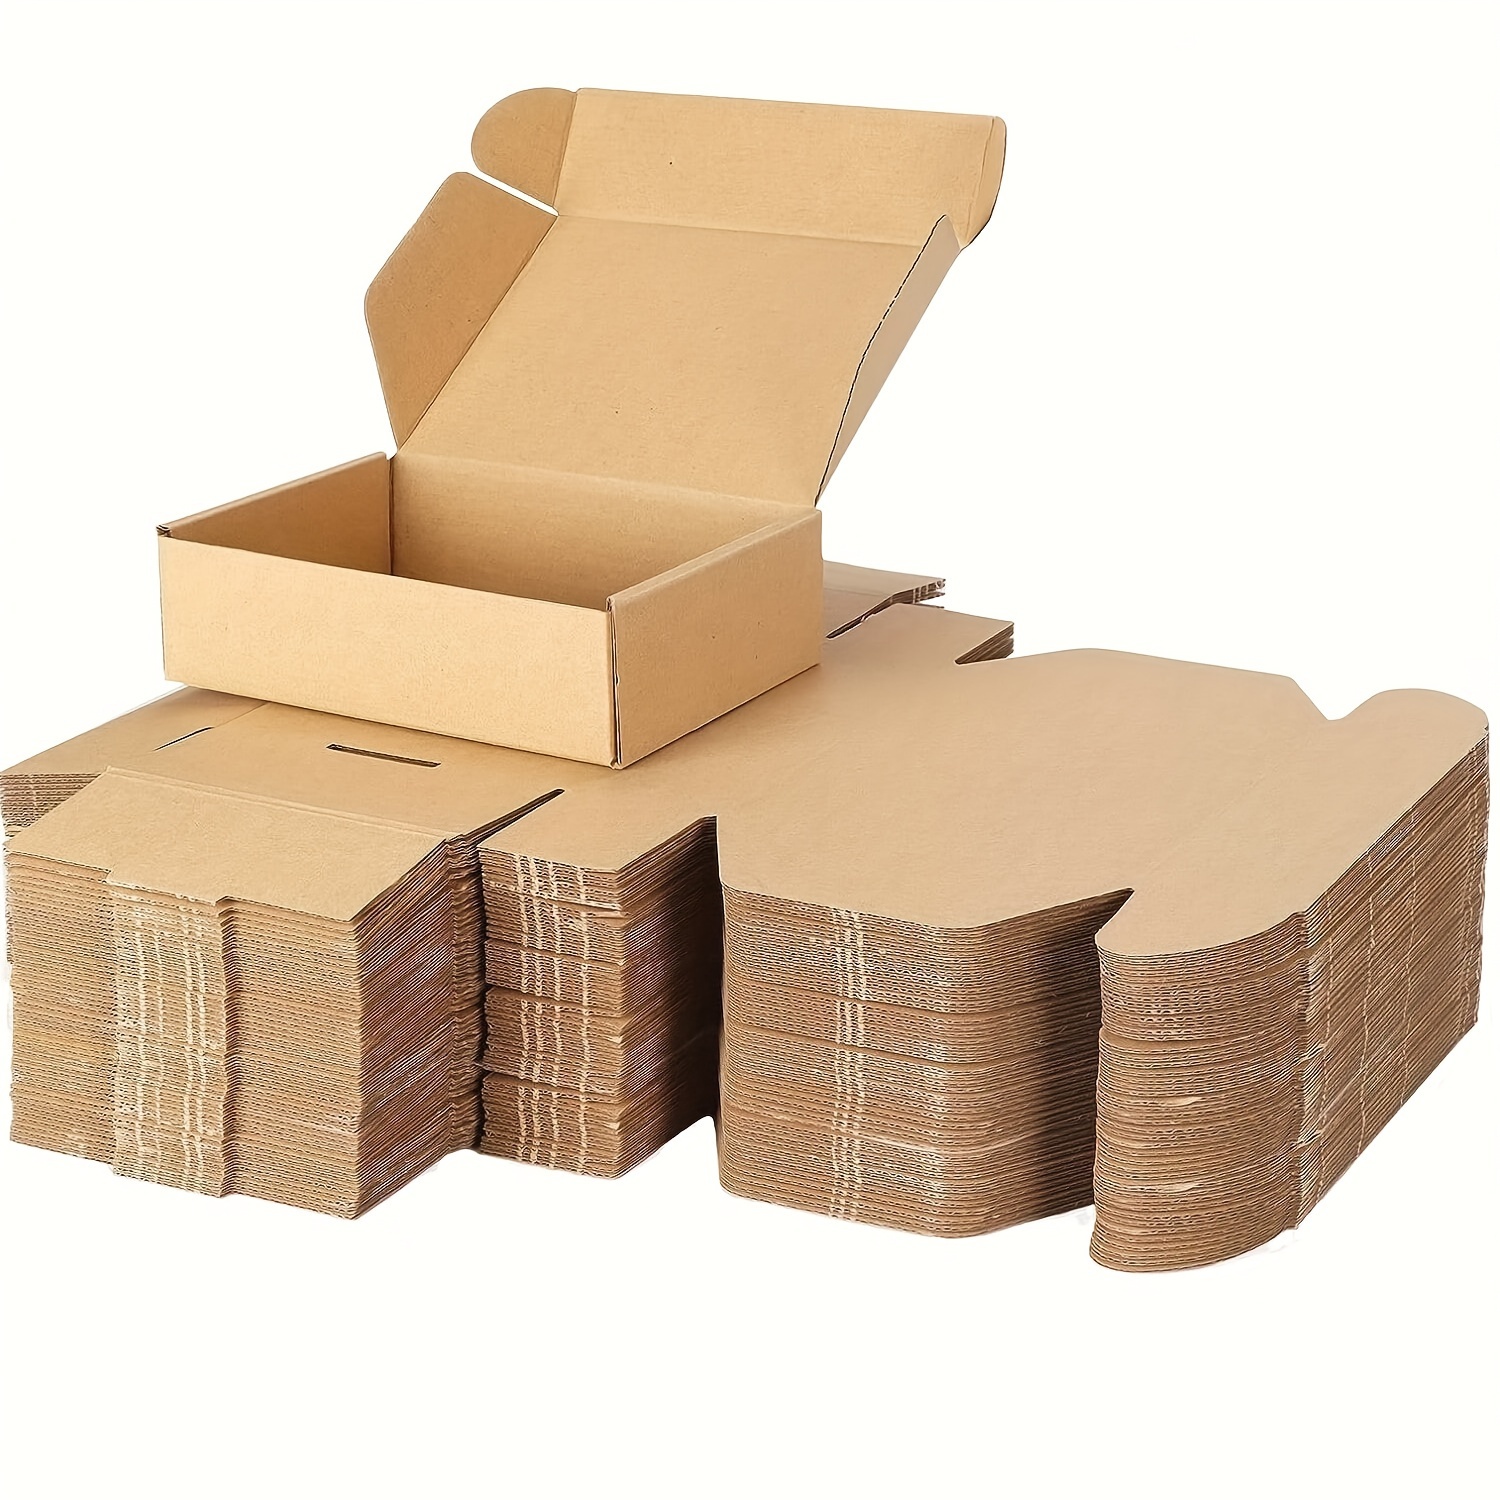 Paquete de 6 cajas de envío aisladas para envío de alimentos congelados,  cajas de envío frías, kits de mudanza de cartón grande para embalaje por